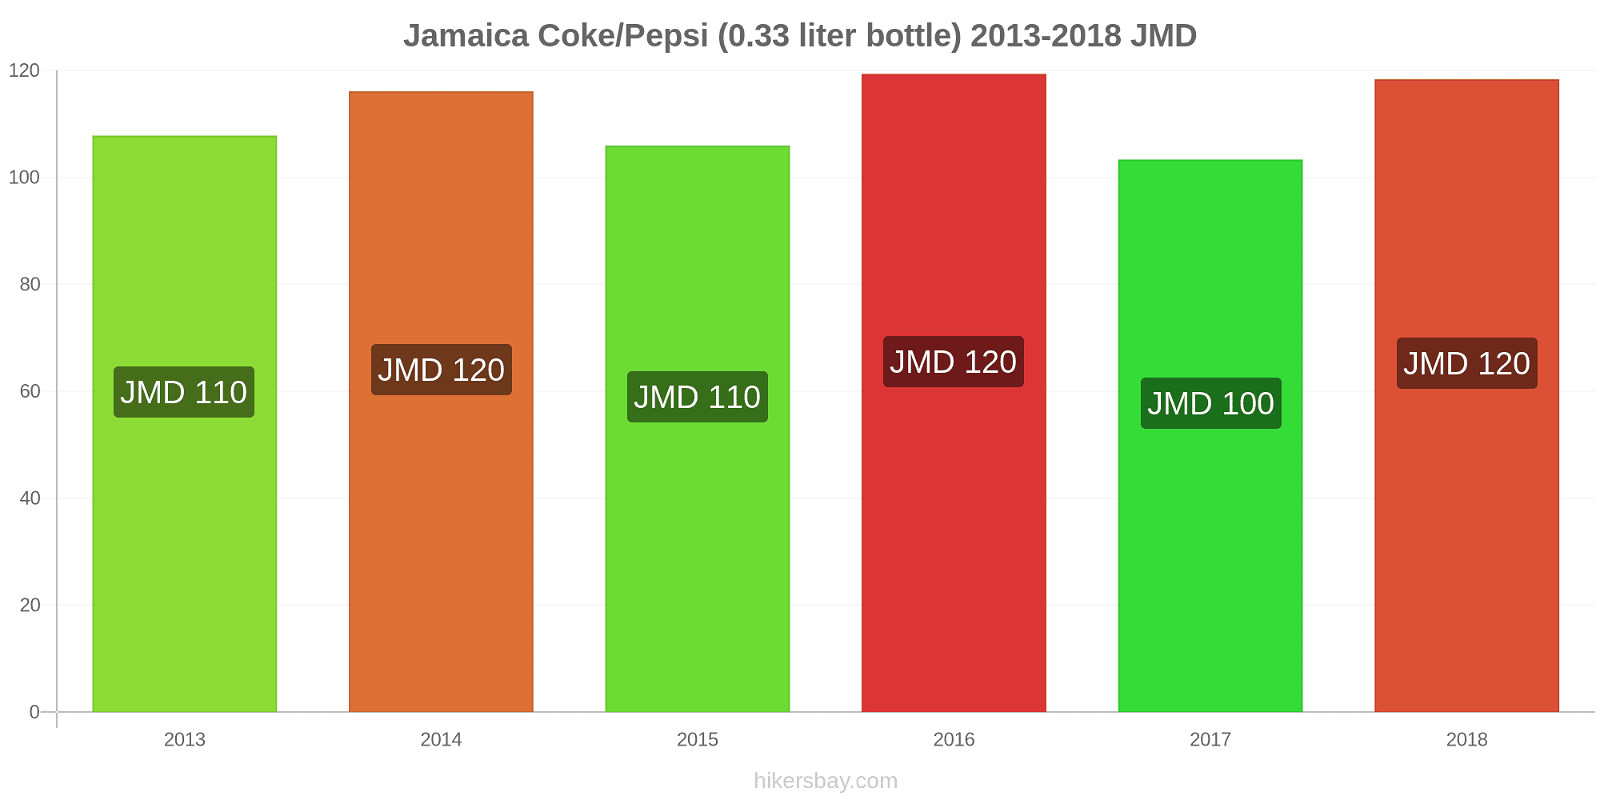 Jamaica price changes Coke/Pepsi (0.33 liter bottle) hikersbay.com